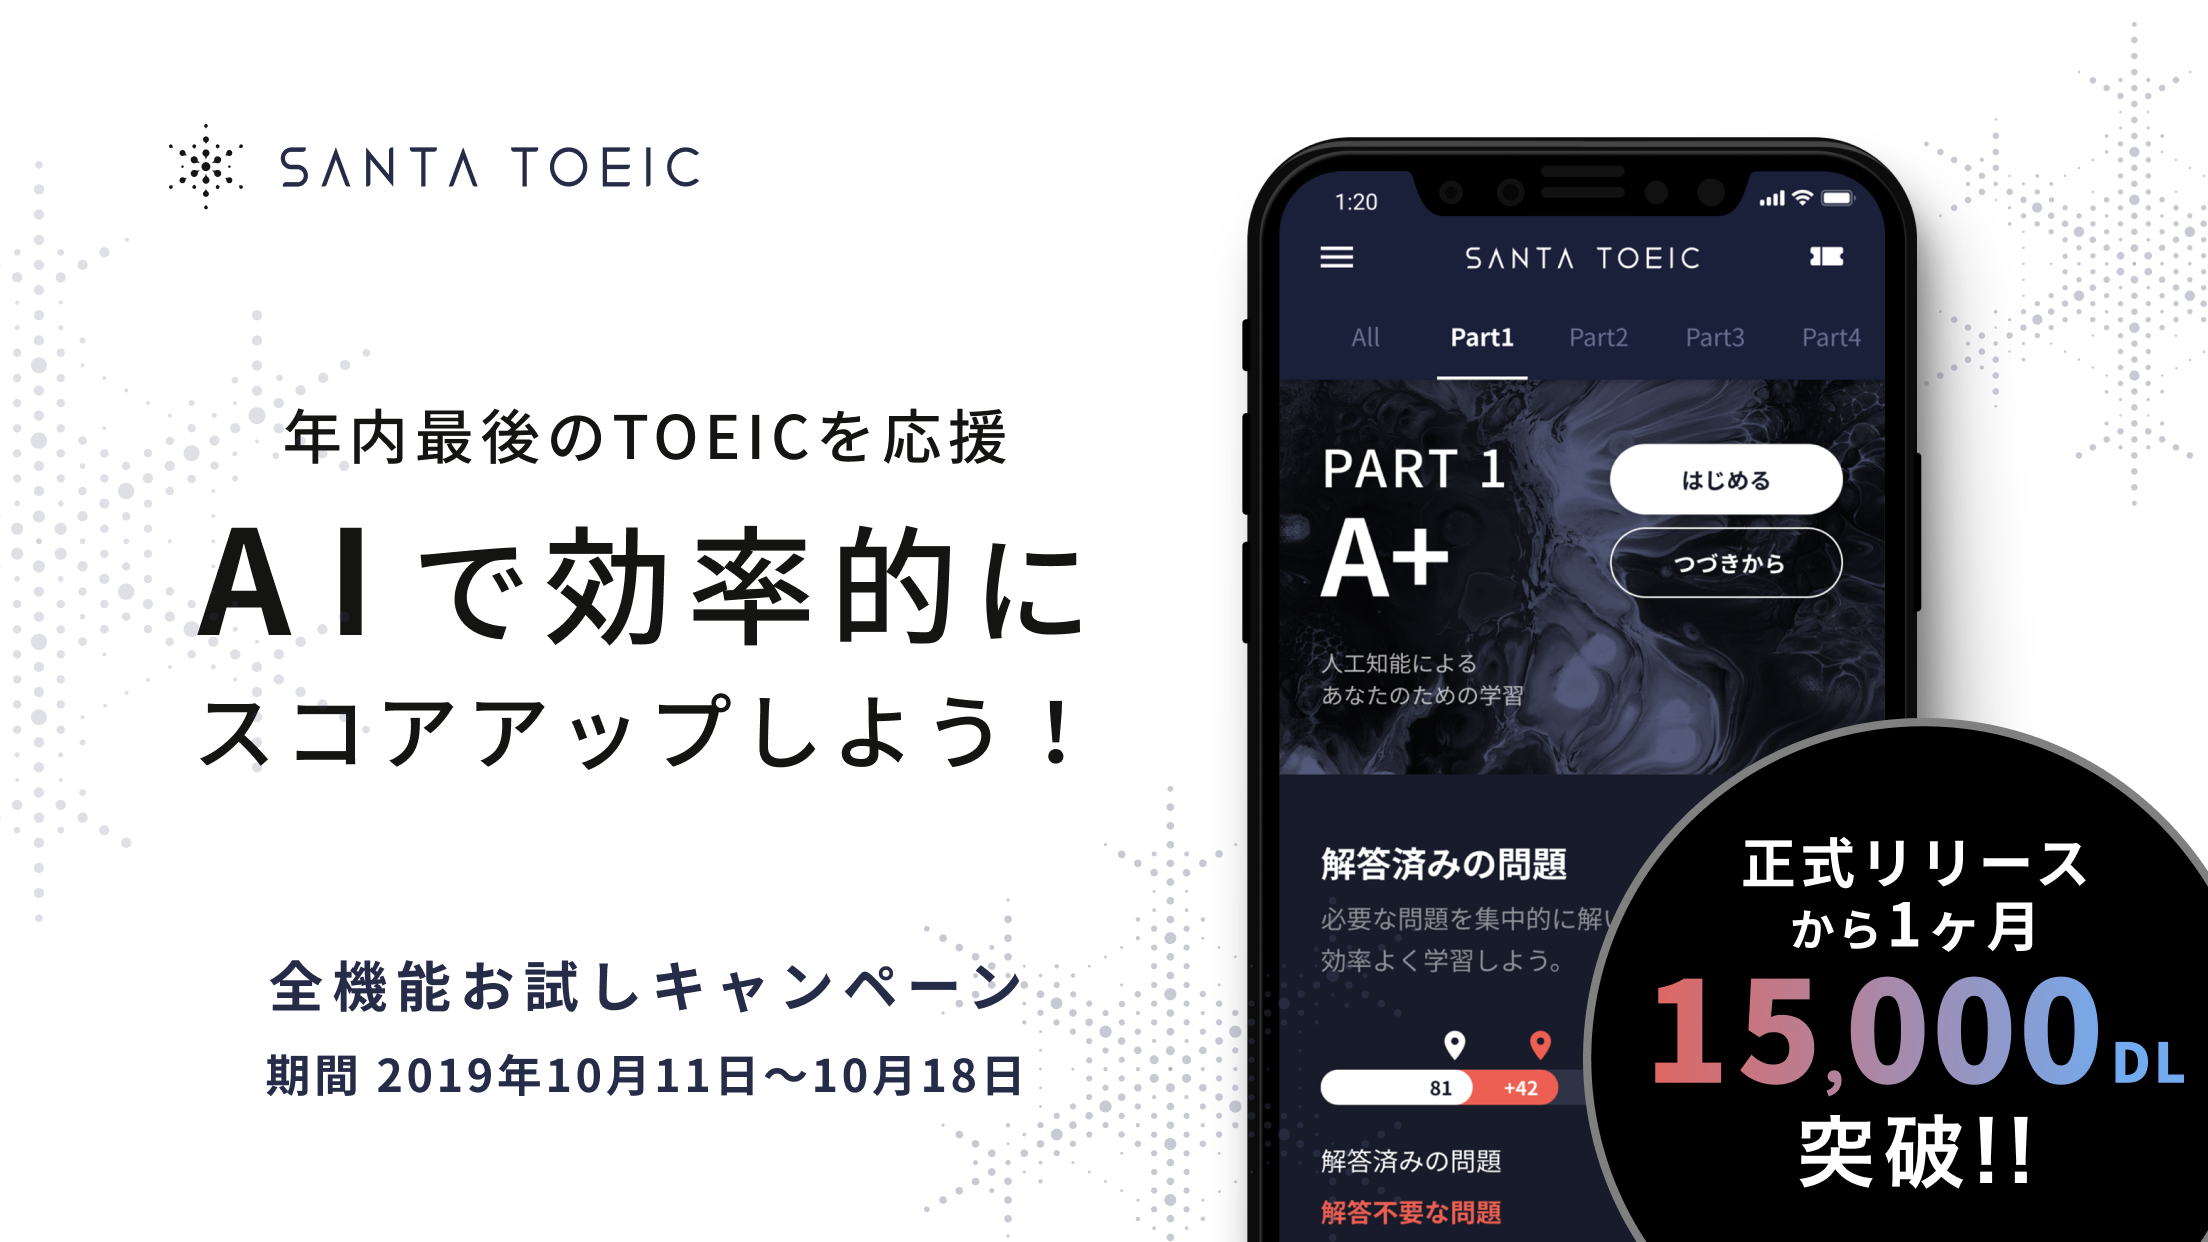 アジアで100万人が利用するai Toeic学習アプリ Santa Toeic日本版 正式リリース1ヶ月で1万5 000ダウンロード突破 株式会社 Langooのプレスリリース